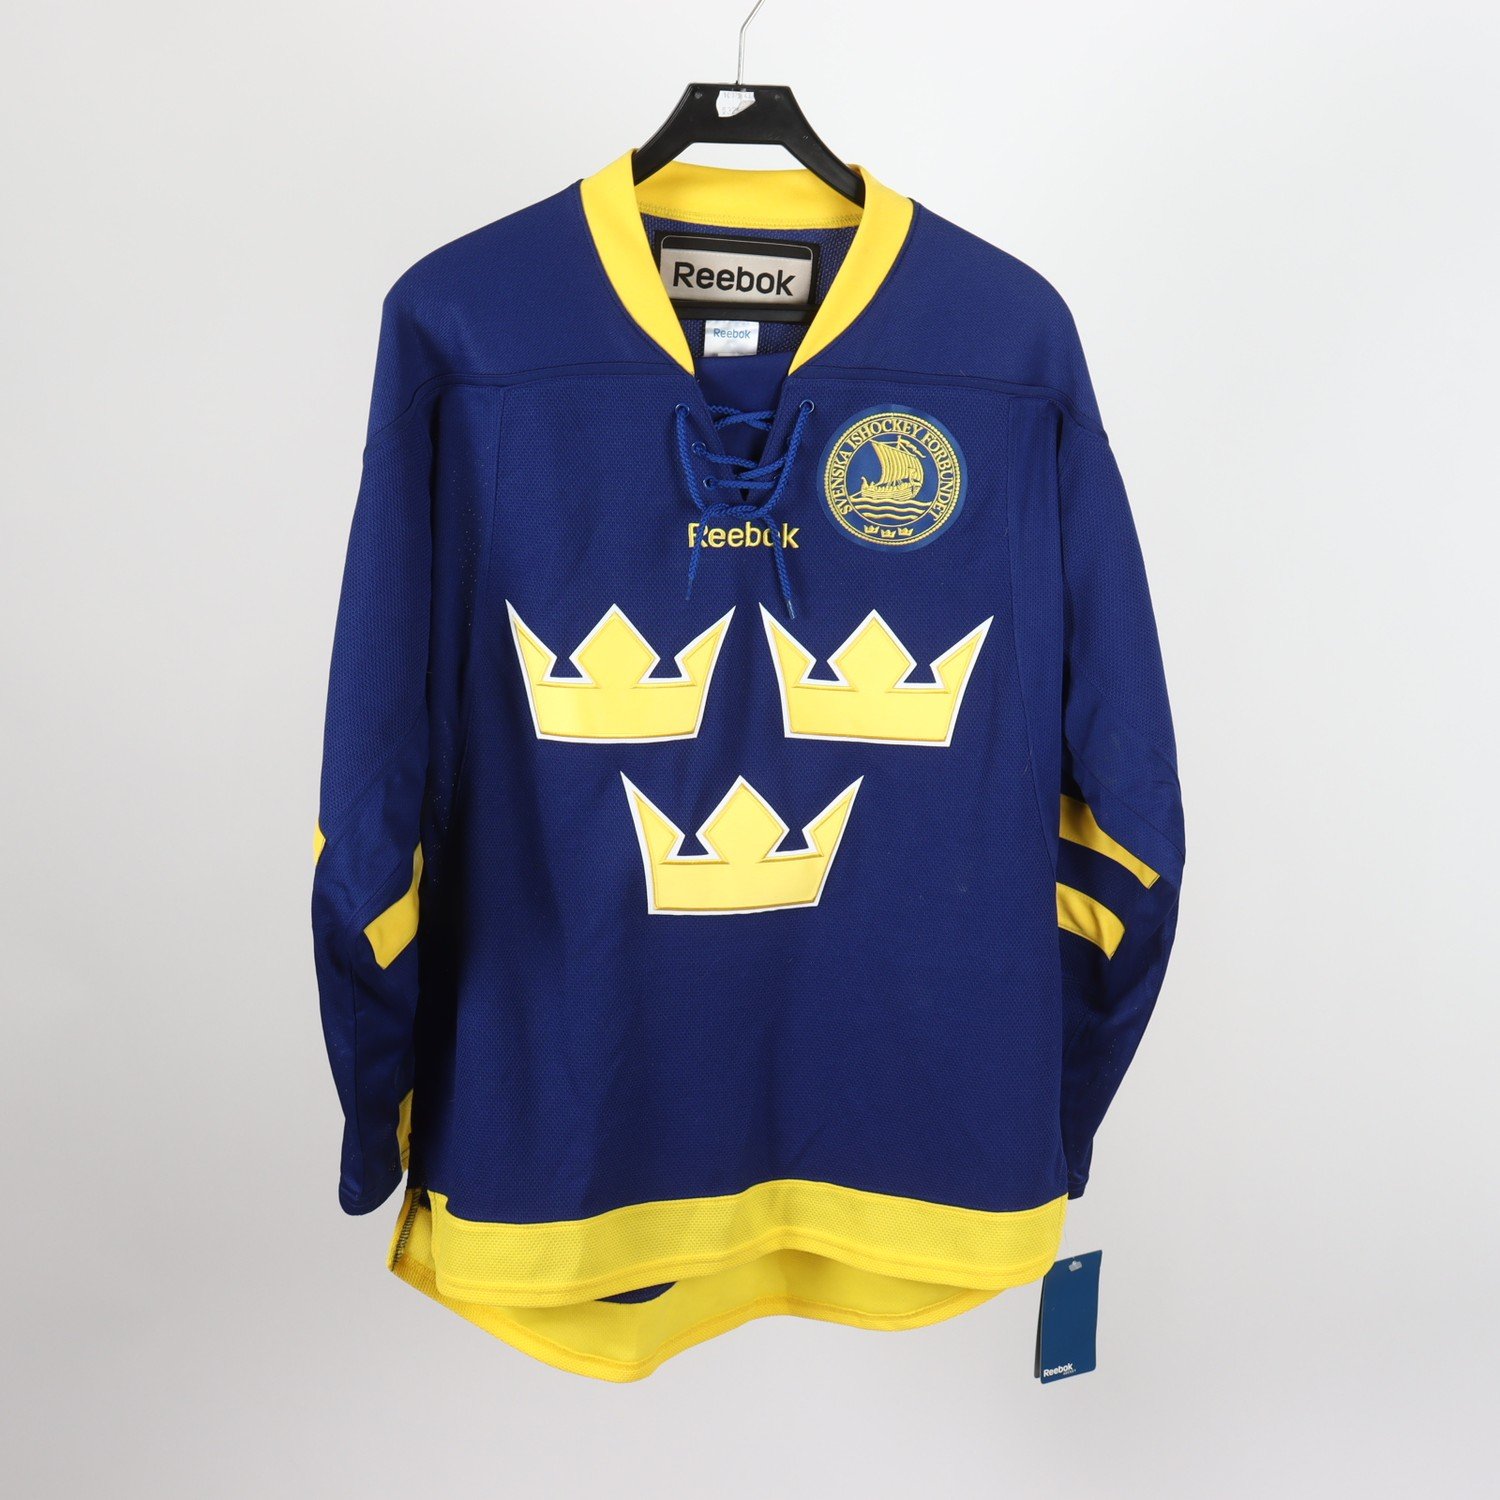 Hockeytröja, Reebok, Sverige, gul, blå, stl. S